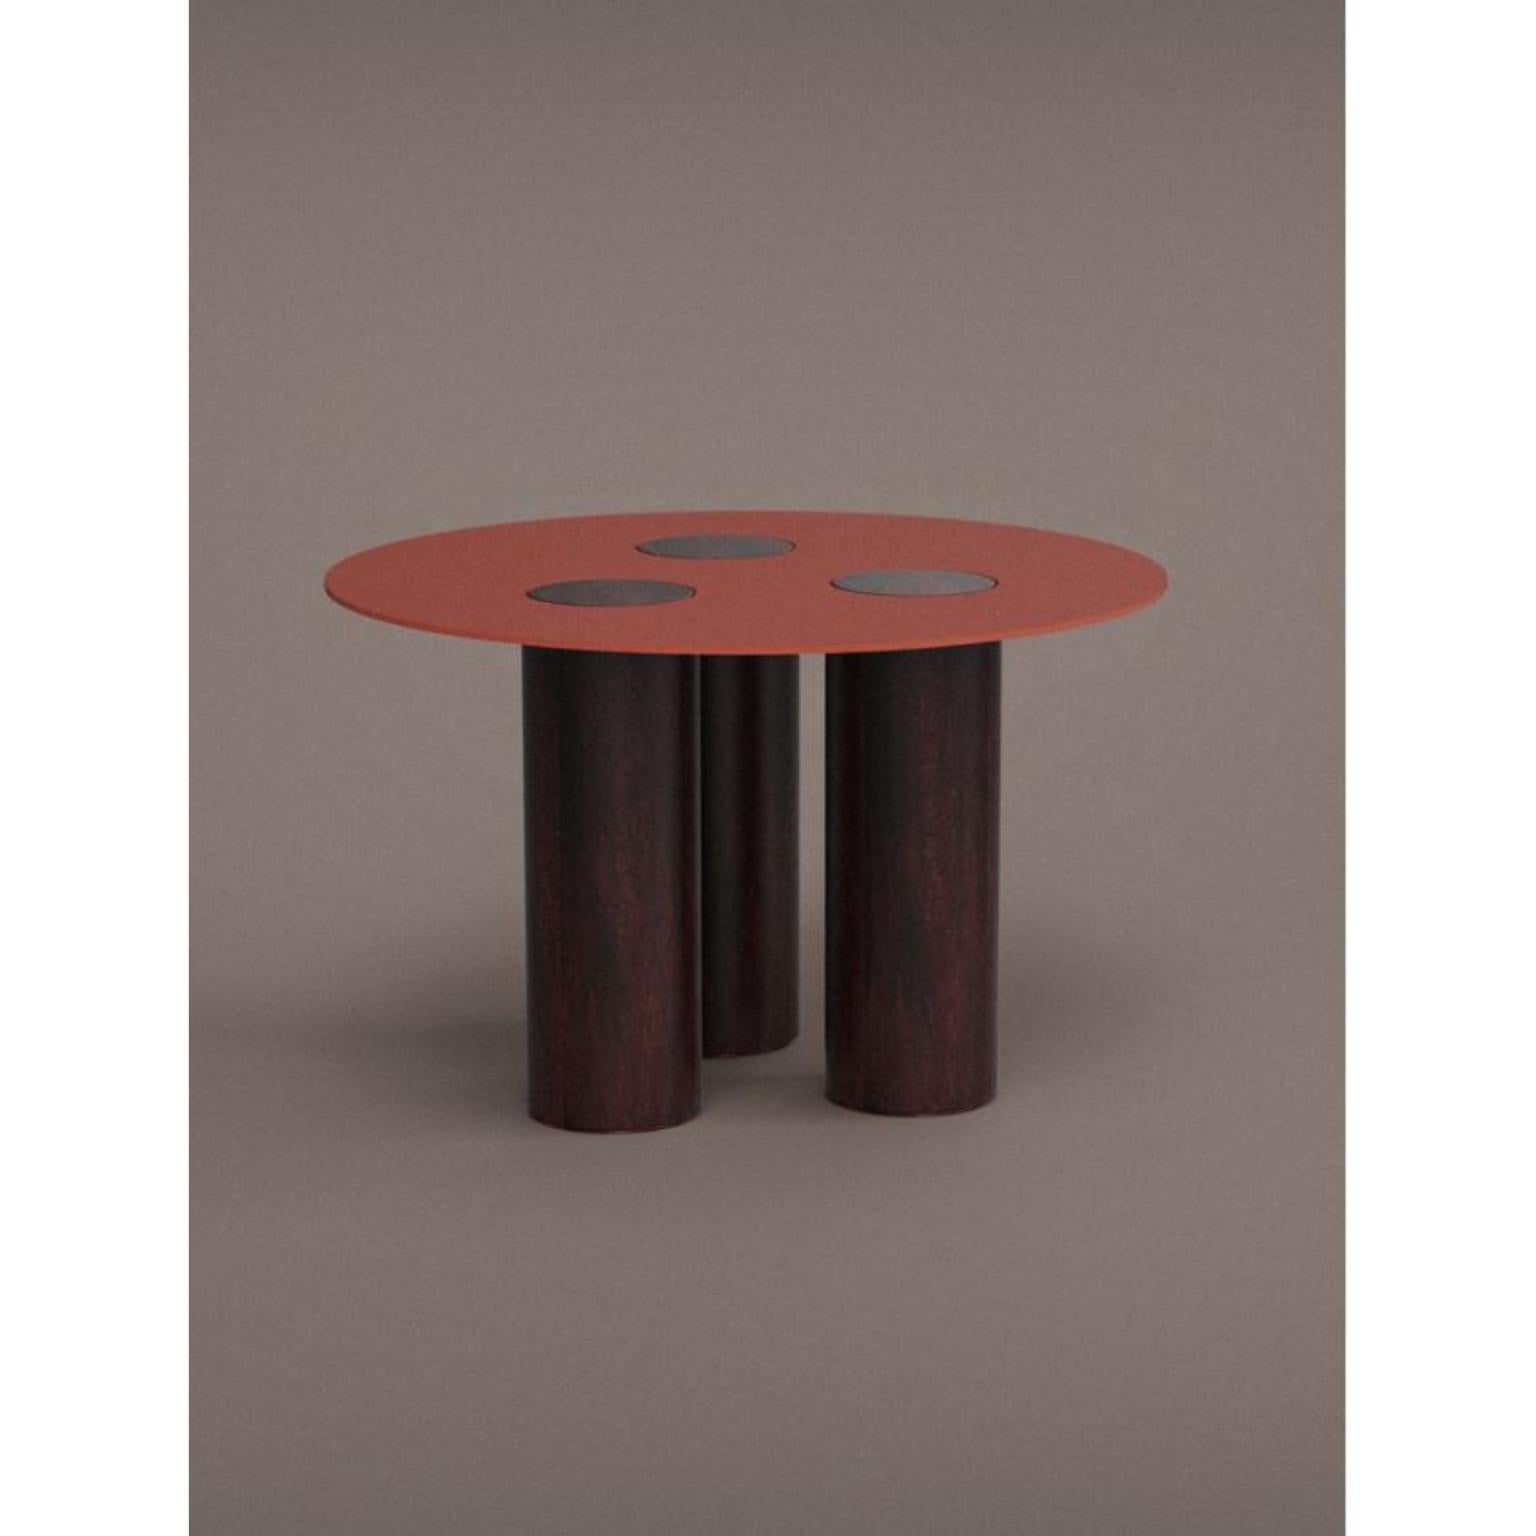 Table colonne WL Ceramics
Concepteur : David Derksen
Matériaux : Porcelaine
Dimensions : H75 x Ø120 cm

Les cylindres en porcelaine et les plaques en acier corten forment les éléments de base de cette série, avec lesquels il est possible de créer